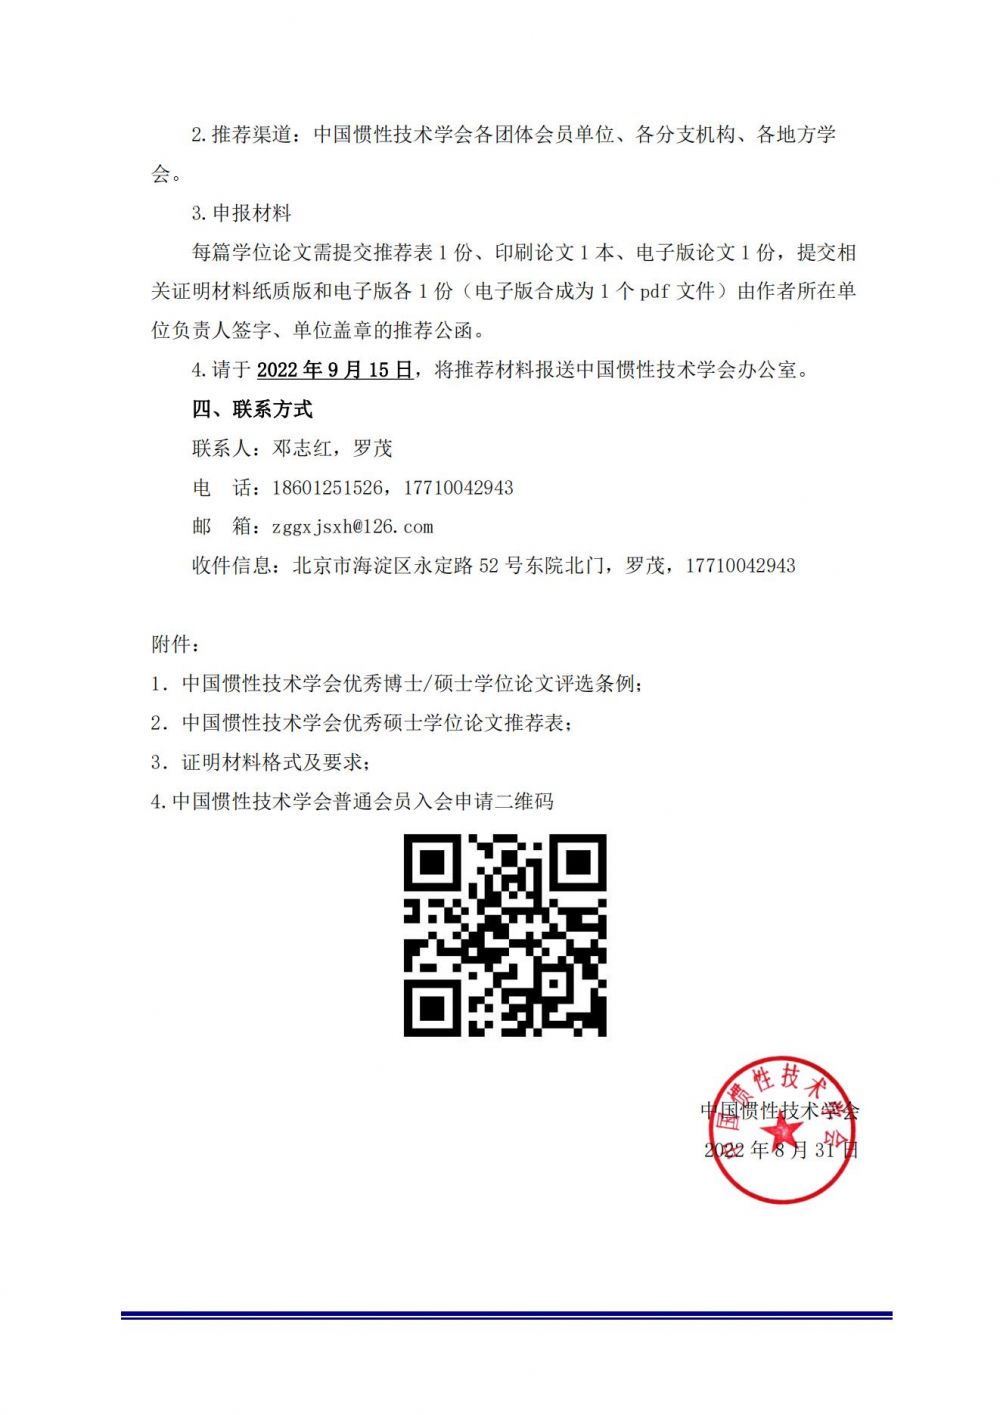 硕士-关于推荐参加2022年中国惯性技术学会优秀硕士学位论文评选的通知_01.jpg